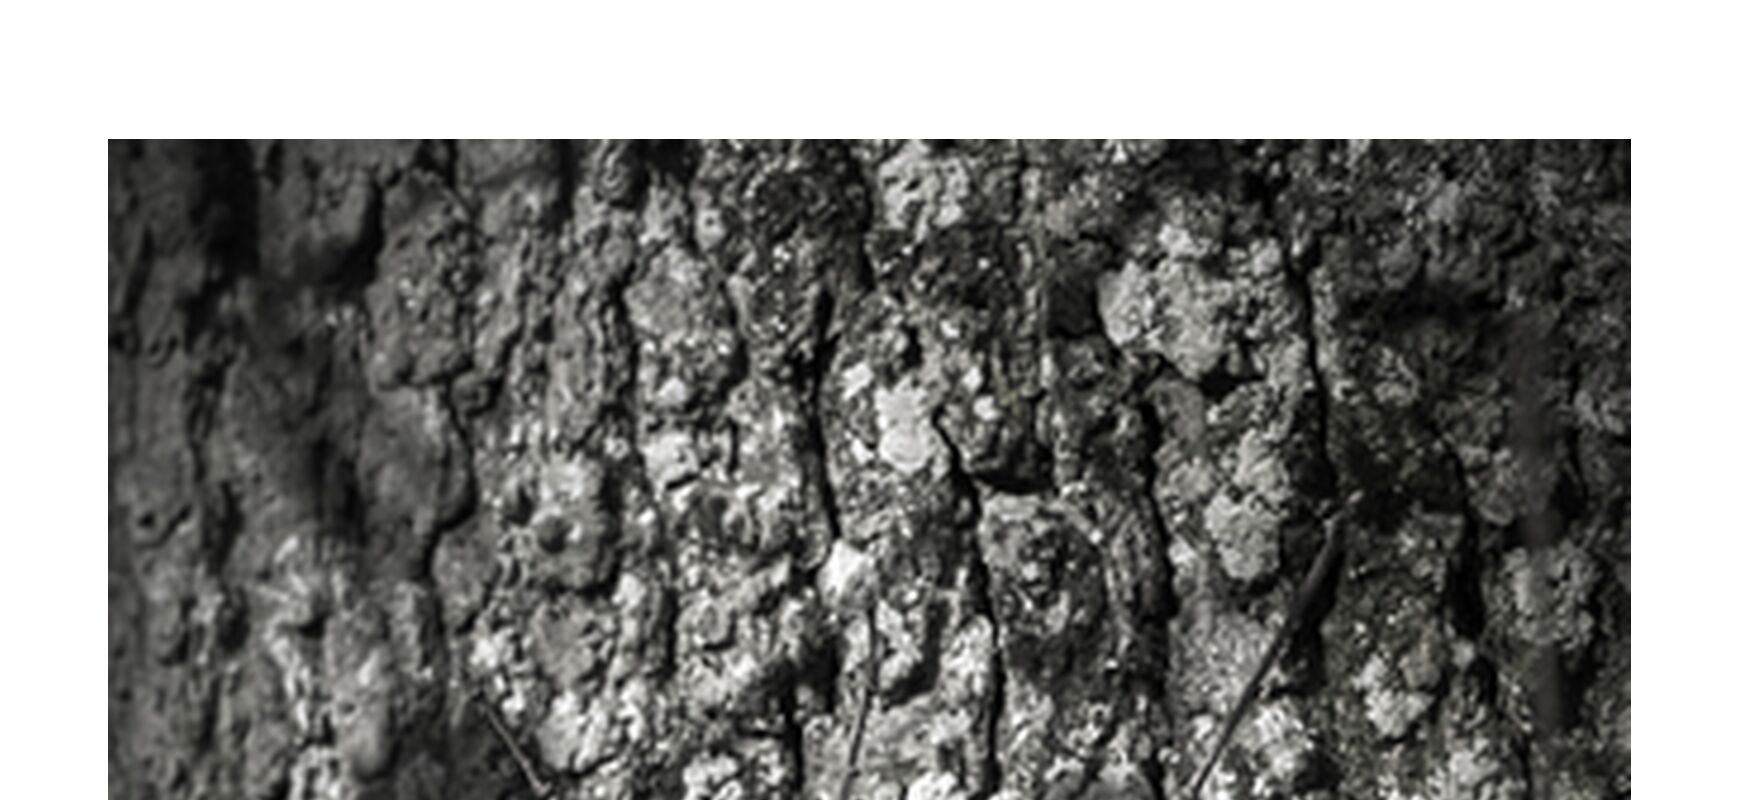 SOUS TA PEAU 7 de jean michel RENAUDIN, Prodi Art, Matériel, Lierre, tronc, forêt, arbre, matière, vivante, vivant, écorce